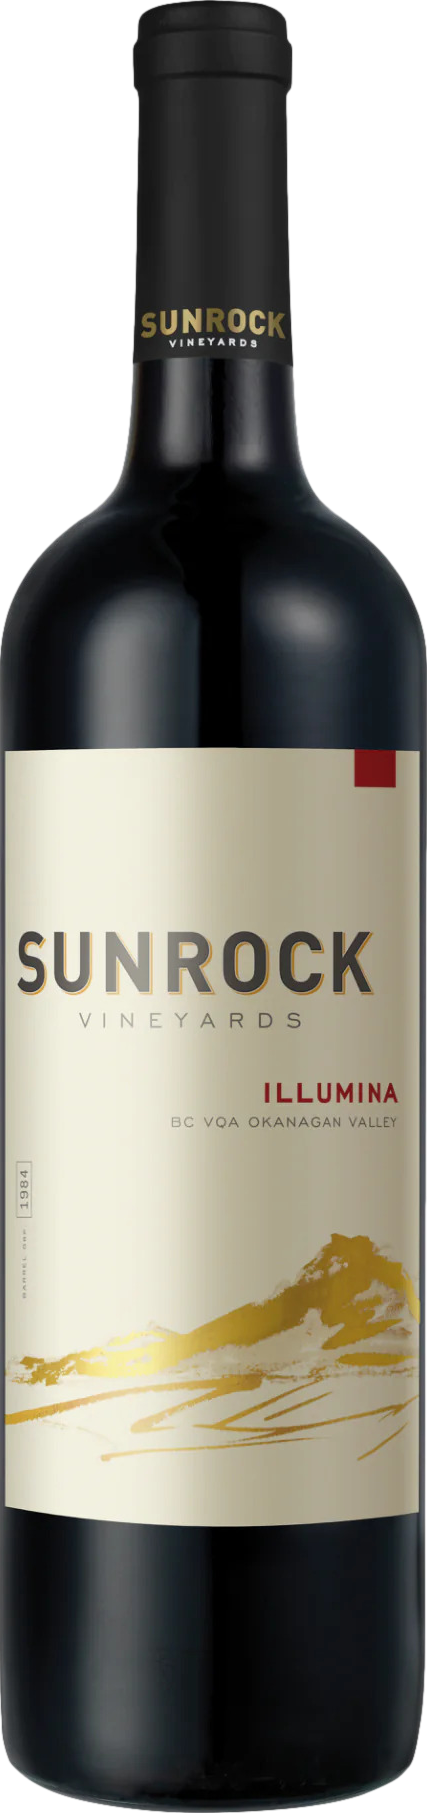 Sunrock Illumina 2020